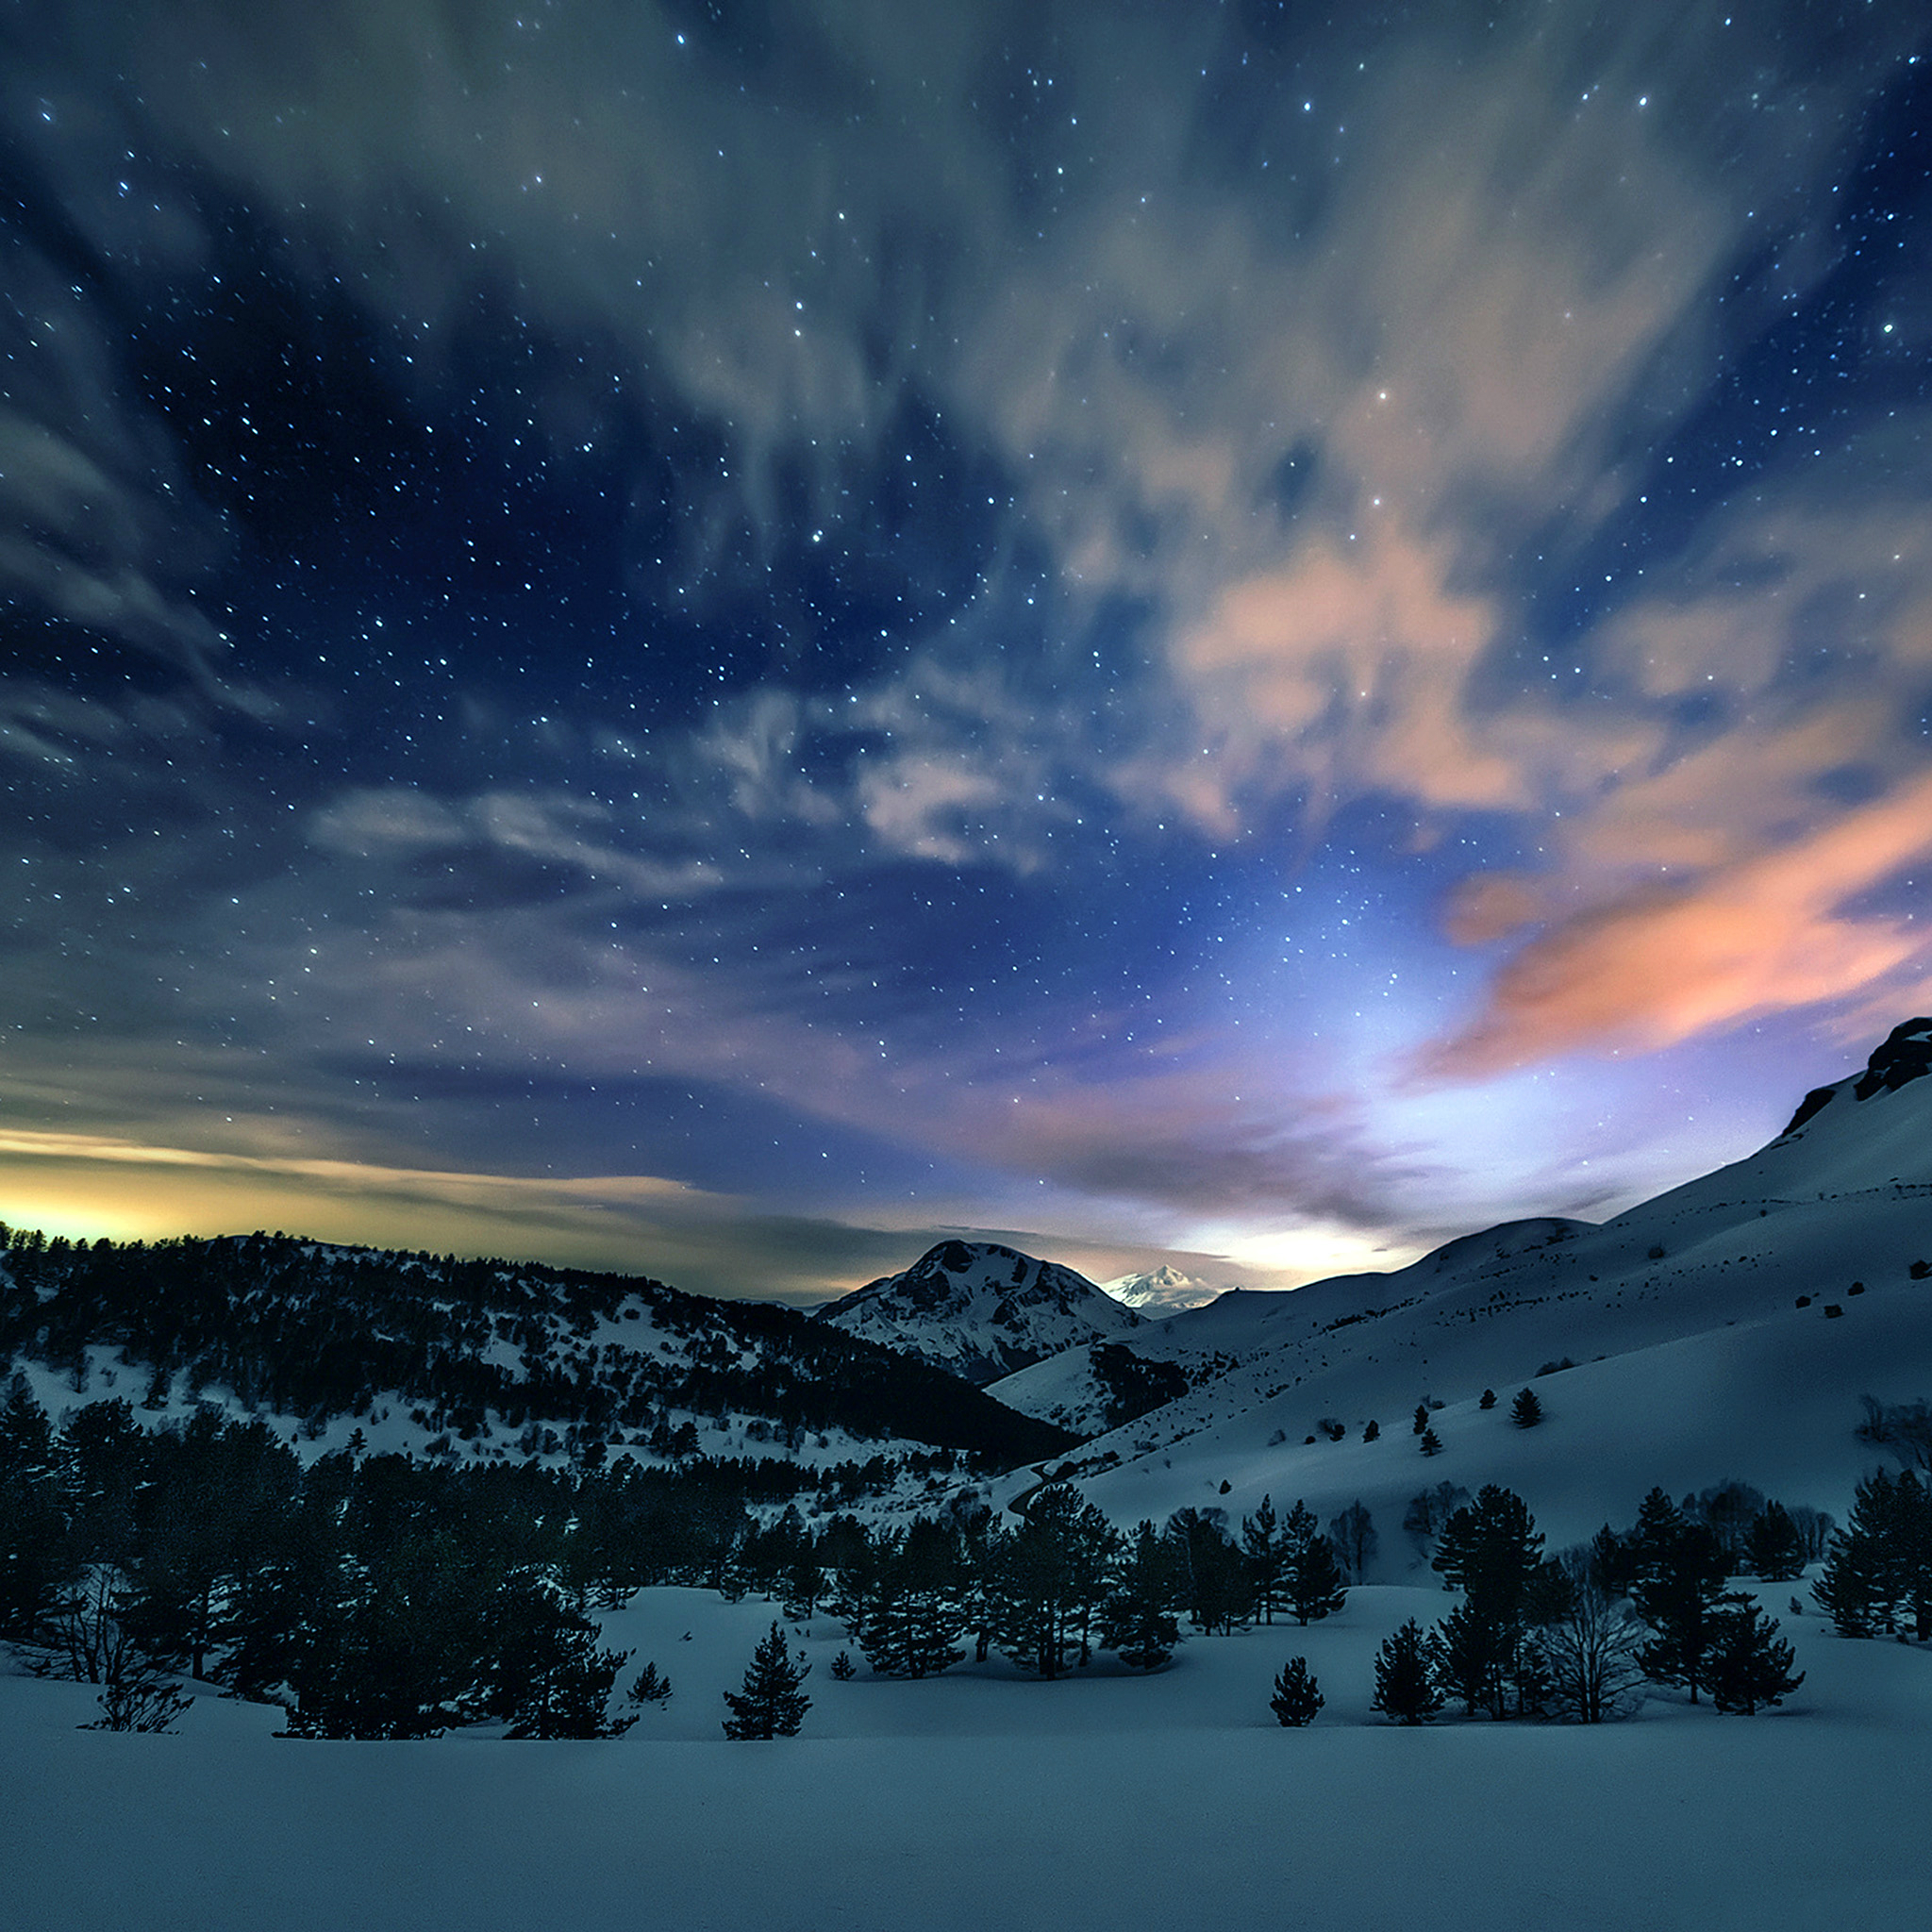 горы снег зима деревья ночь небо звезды без смс